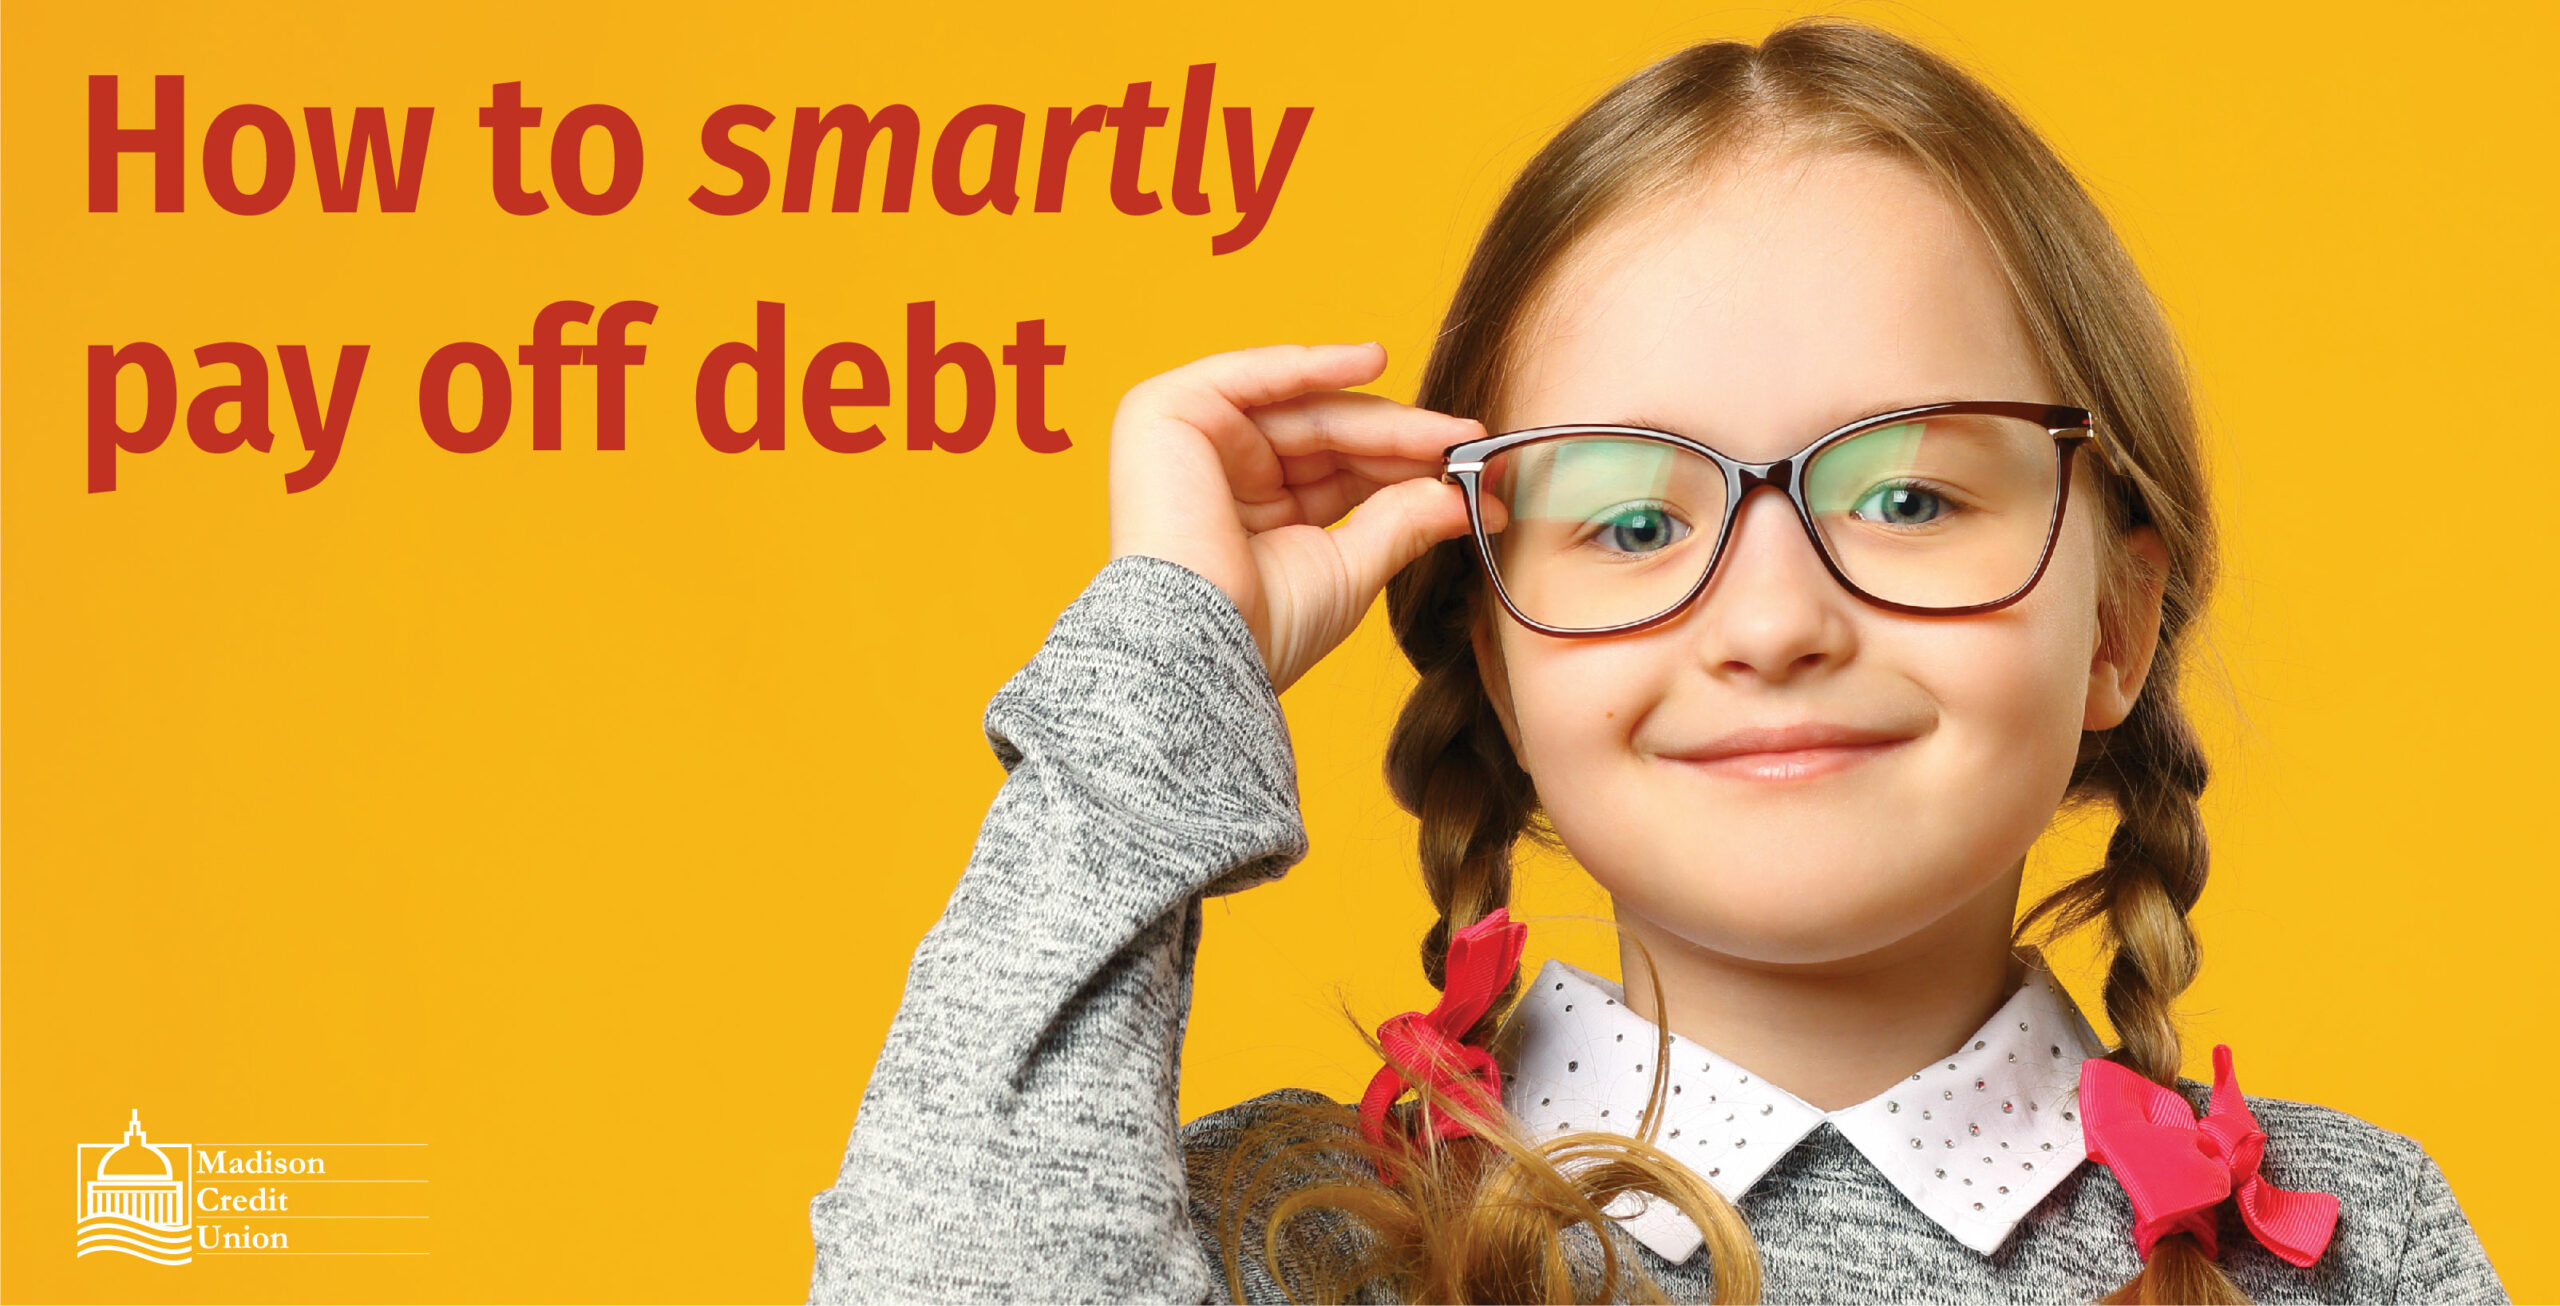 Smart Debt Relief Tips